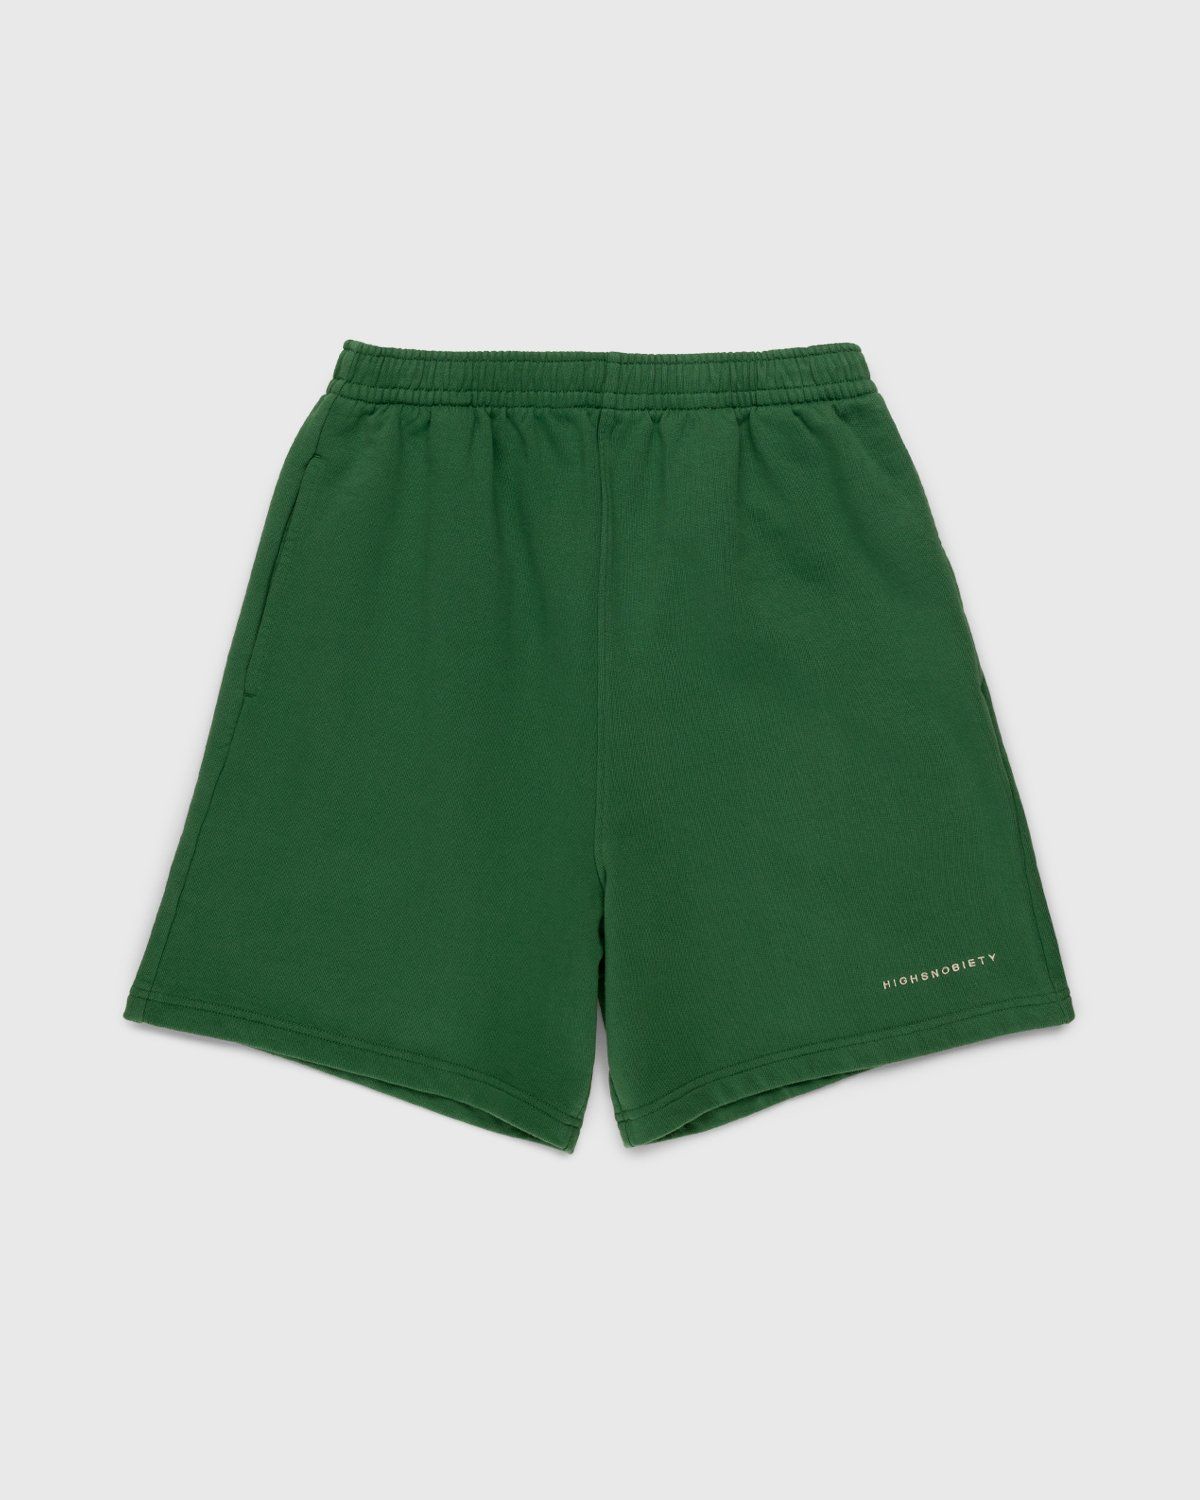 Highsnobiety – Staples Shorts Lush Green - Image 1